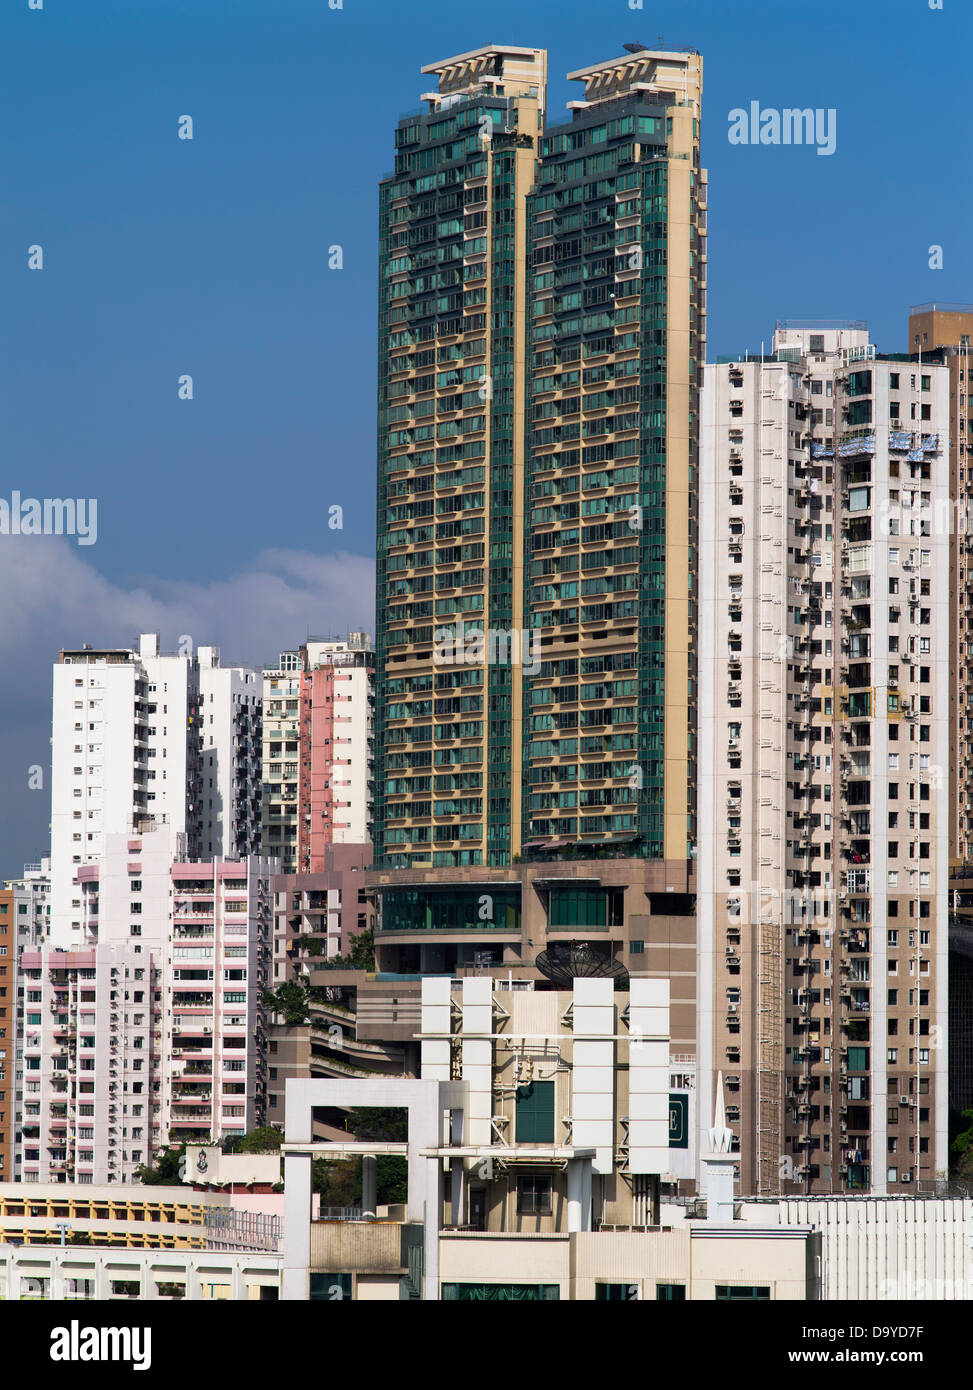 dh CAUSEWAY BAY HONG KONG Chine hauts appartements résidentiels gratte-ciel bâtiments blocs de tour Banque D'Images